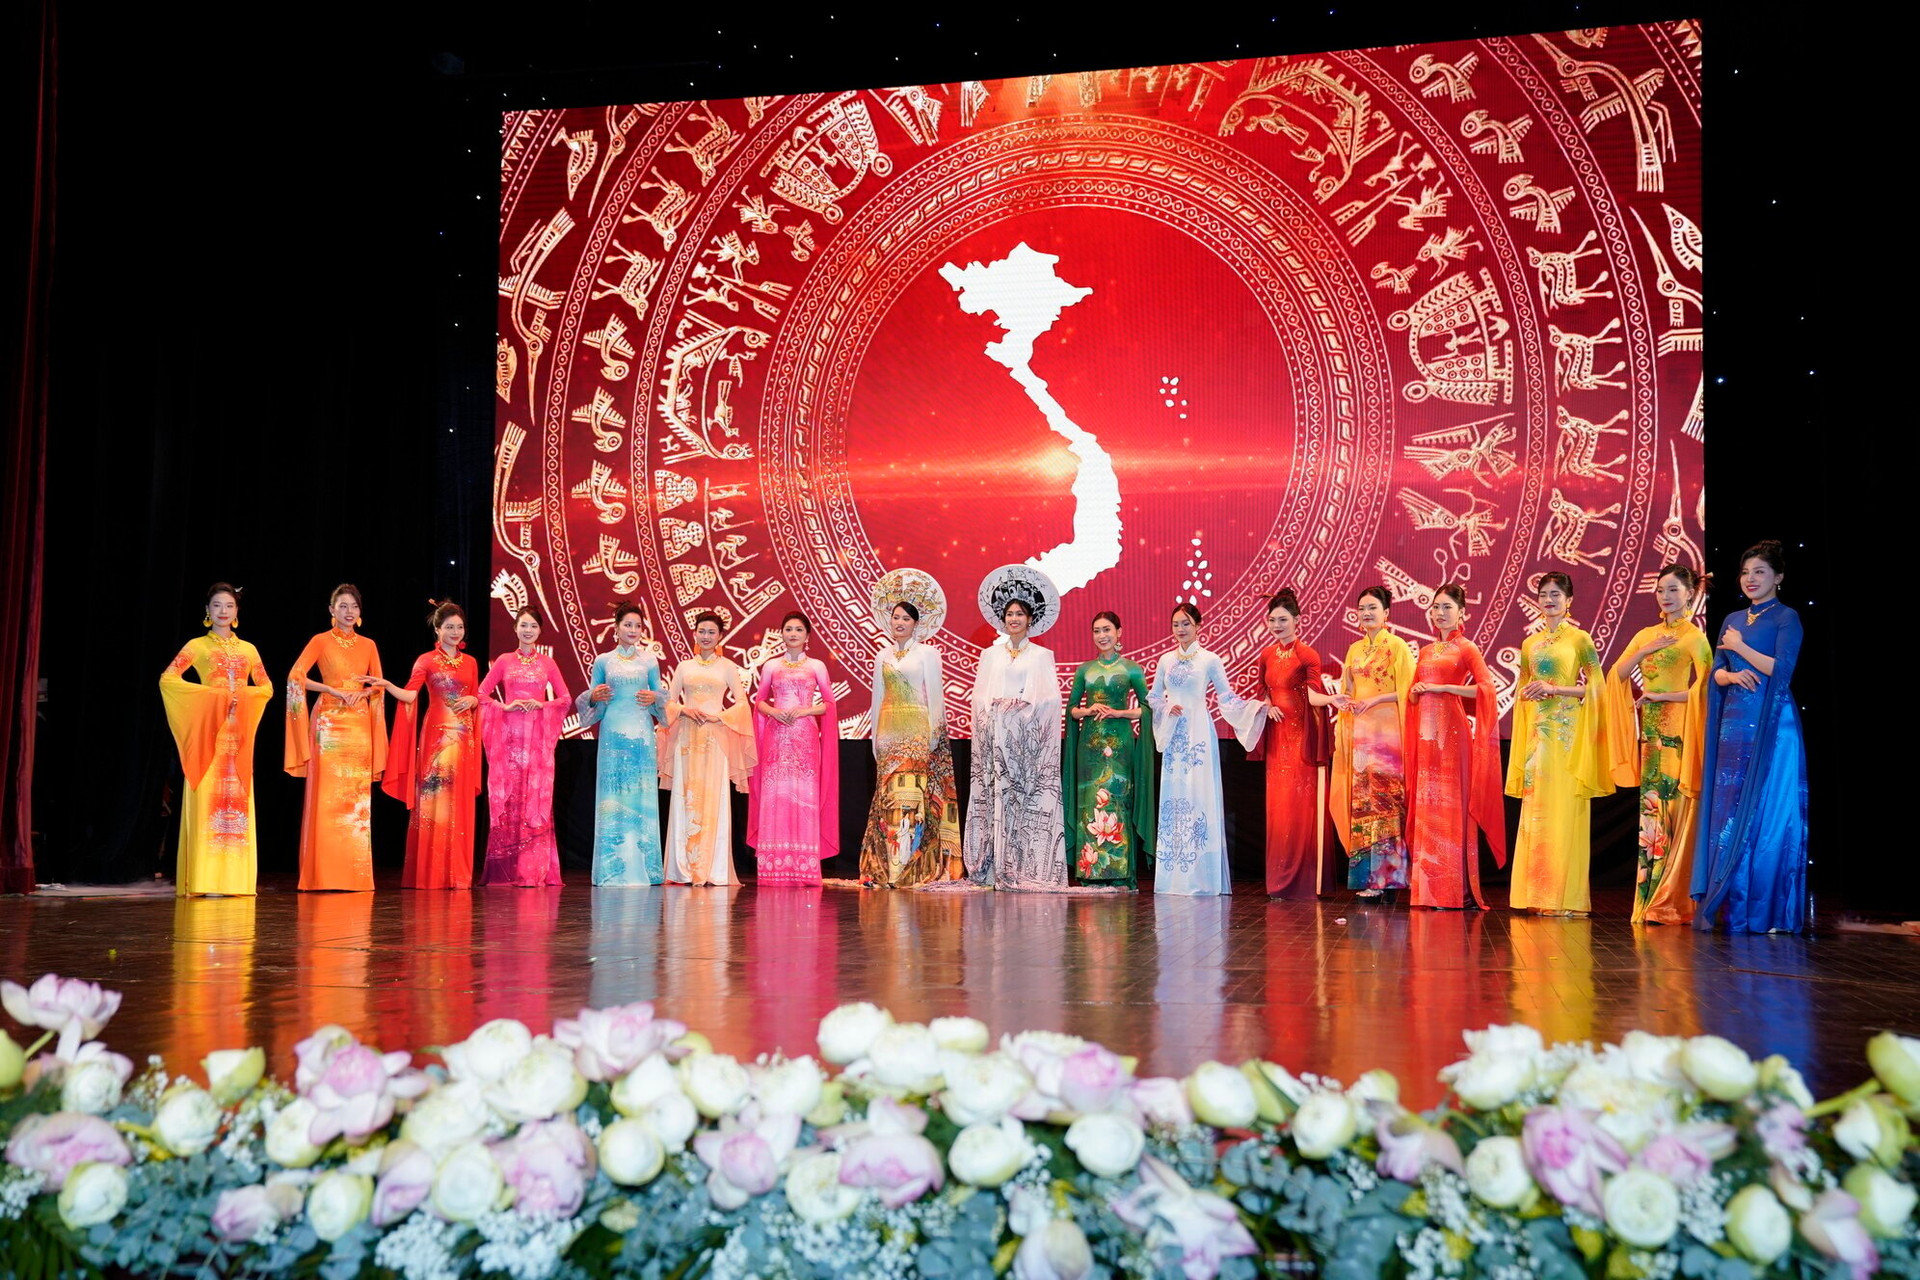 Câu lạc bộ Di sản áo dài Việt Nam thành phố Hà Nội vừa ra mắt, giới thiệu đến công chúng những tà áo dài truyền thống mang hơi thở hiện đại.